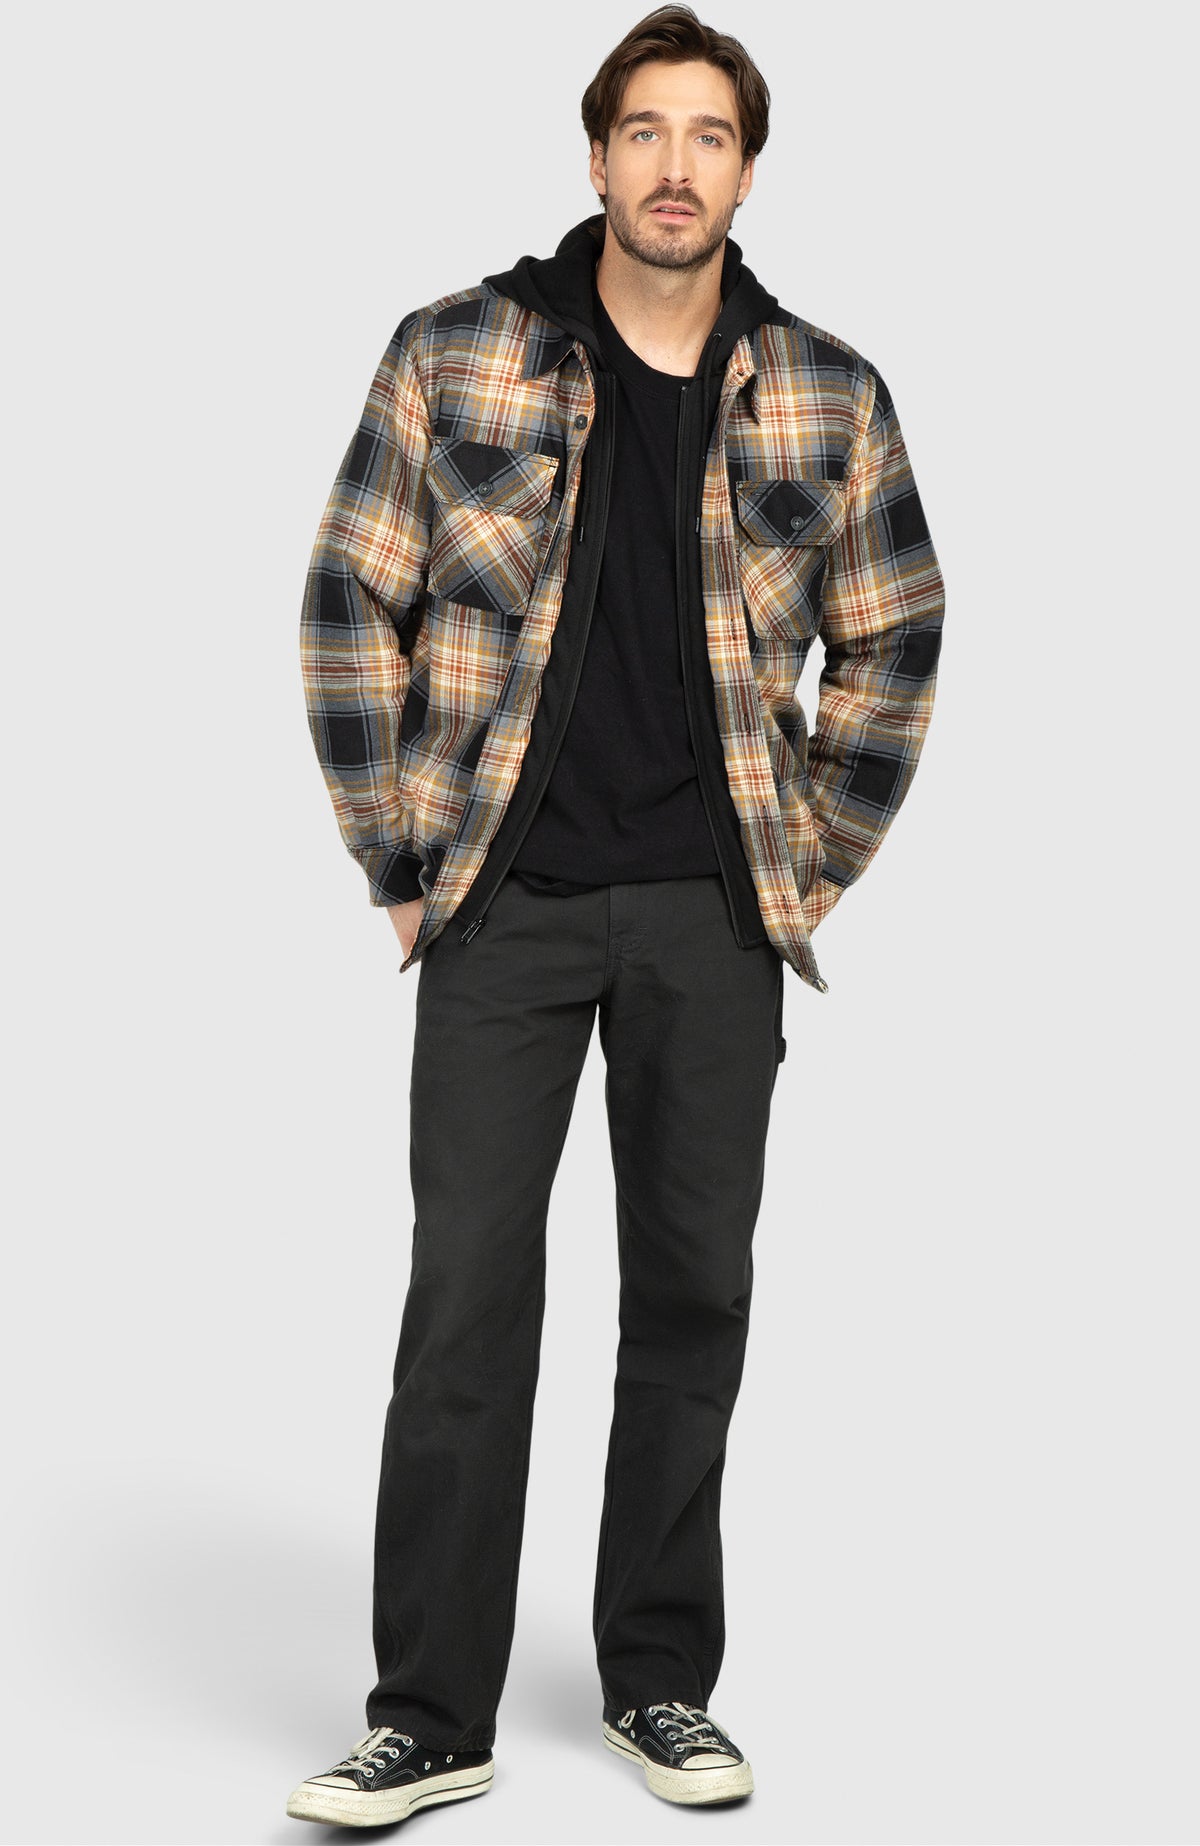 Chestnut Hooded Flannel Shirt Jacket - Full Length